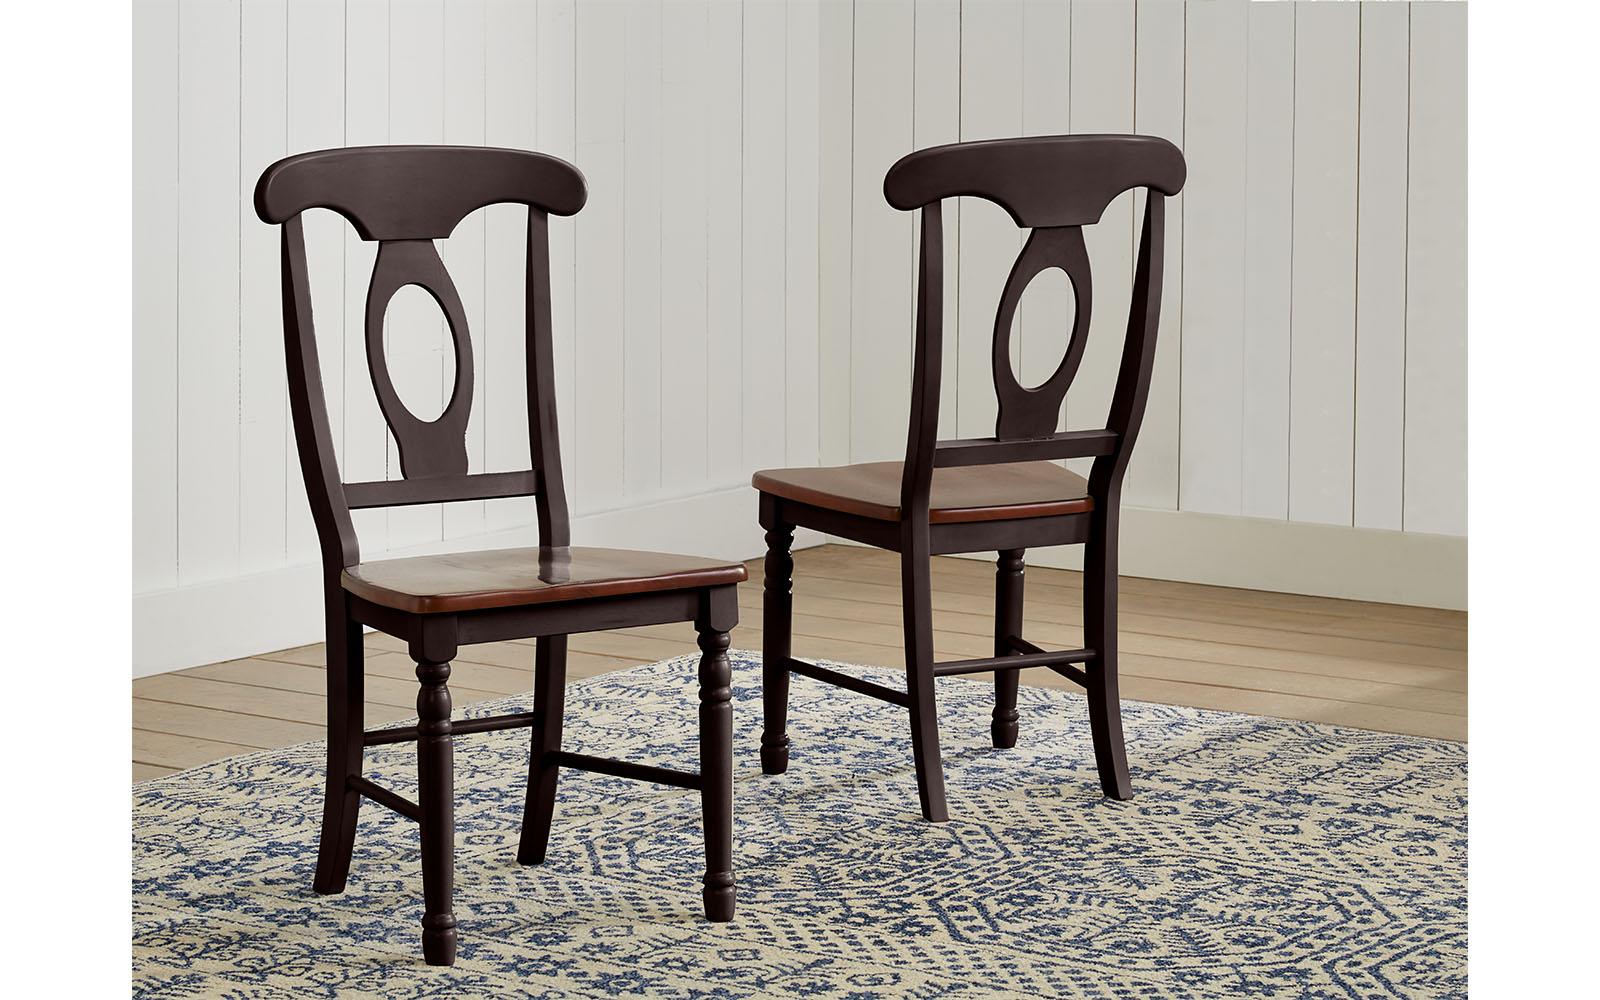 Rustic Dining Side Chair British Isles OB BRIOB285K-Set-2 in Black, Brown 